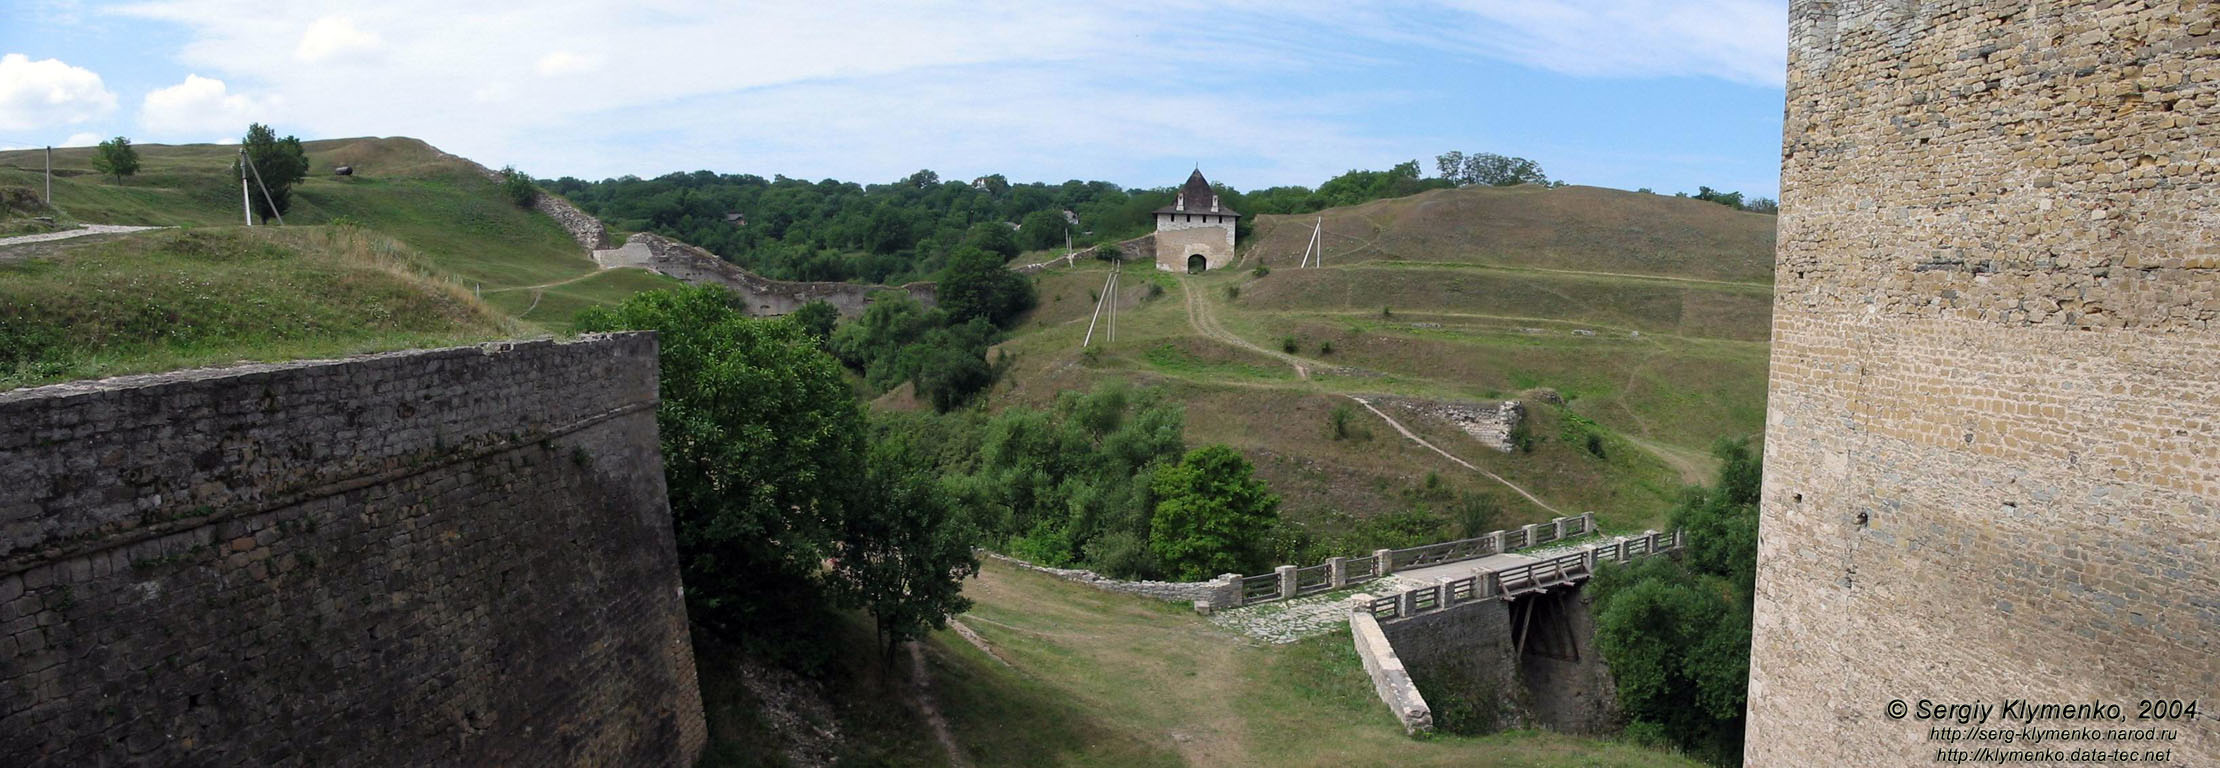 Поділля, Чернівецька область. Хотинська фортеця, вид з в’їзного мосту до цитаделі.